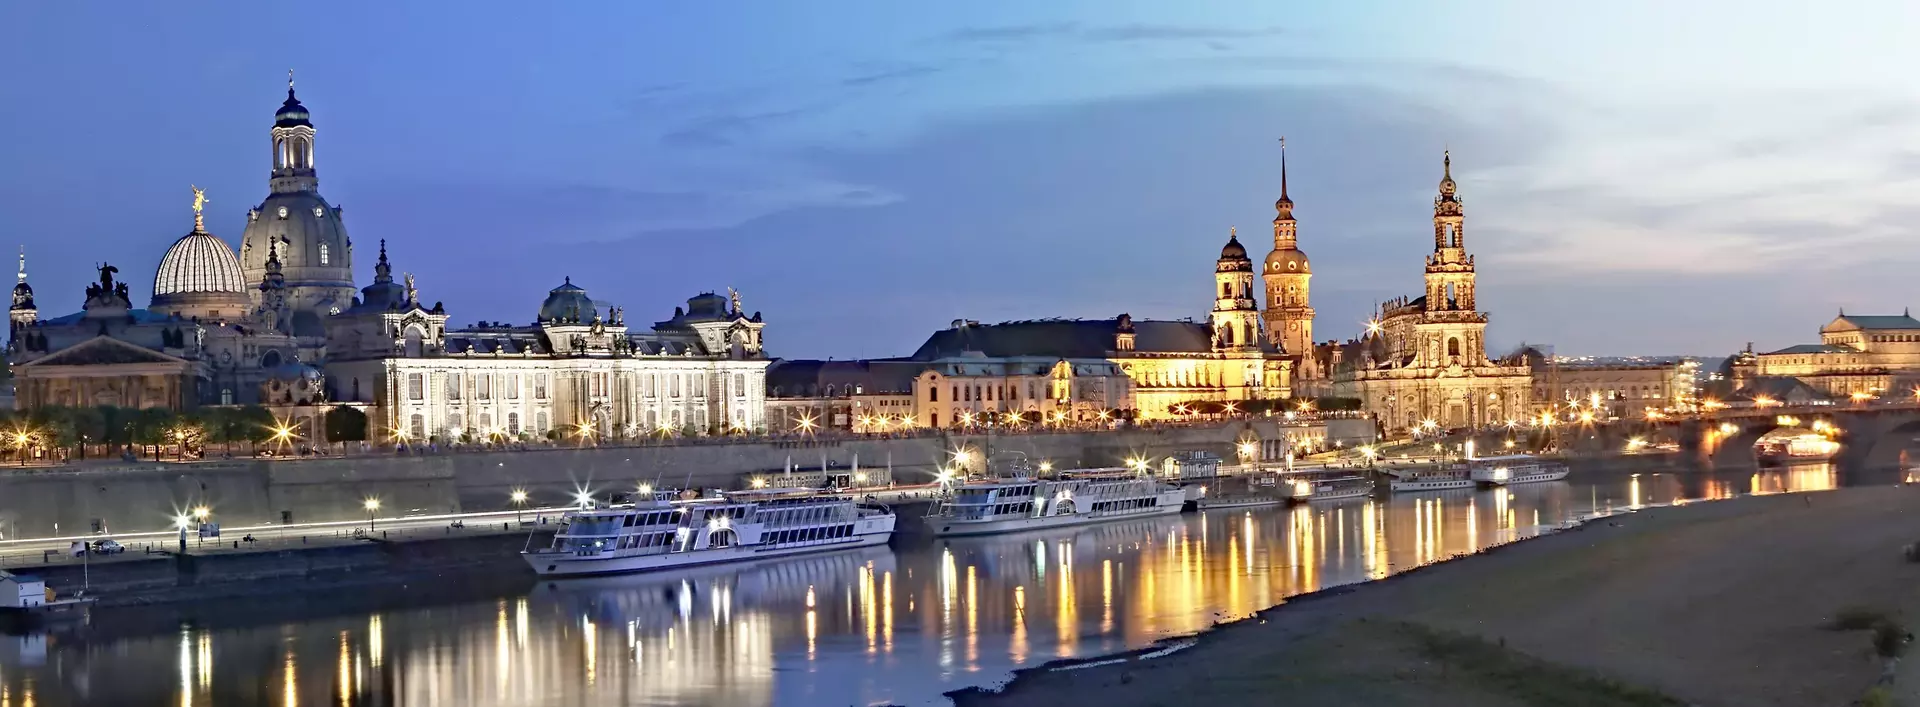 Dresden beeindruckt mit berühmten Sehenswürdigkeiten wie Semperoper, Frauenkirche, Zwinger und Grünem Gewölbe. 